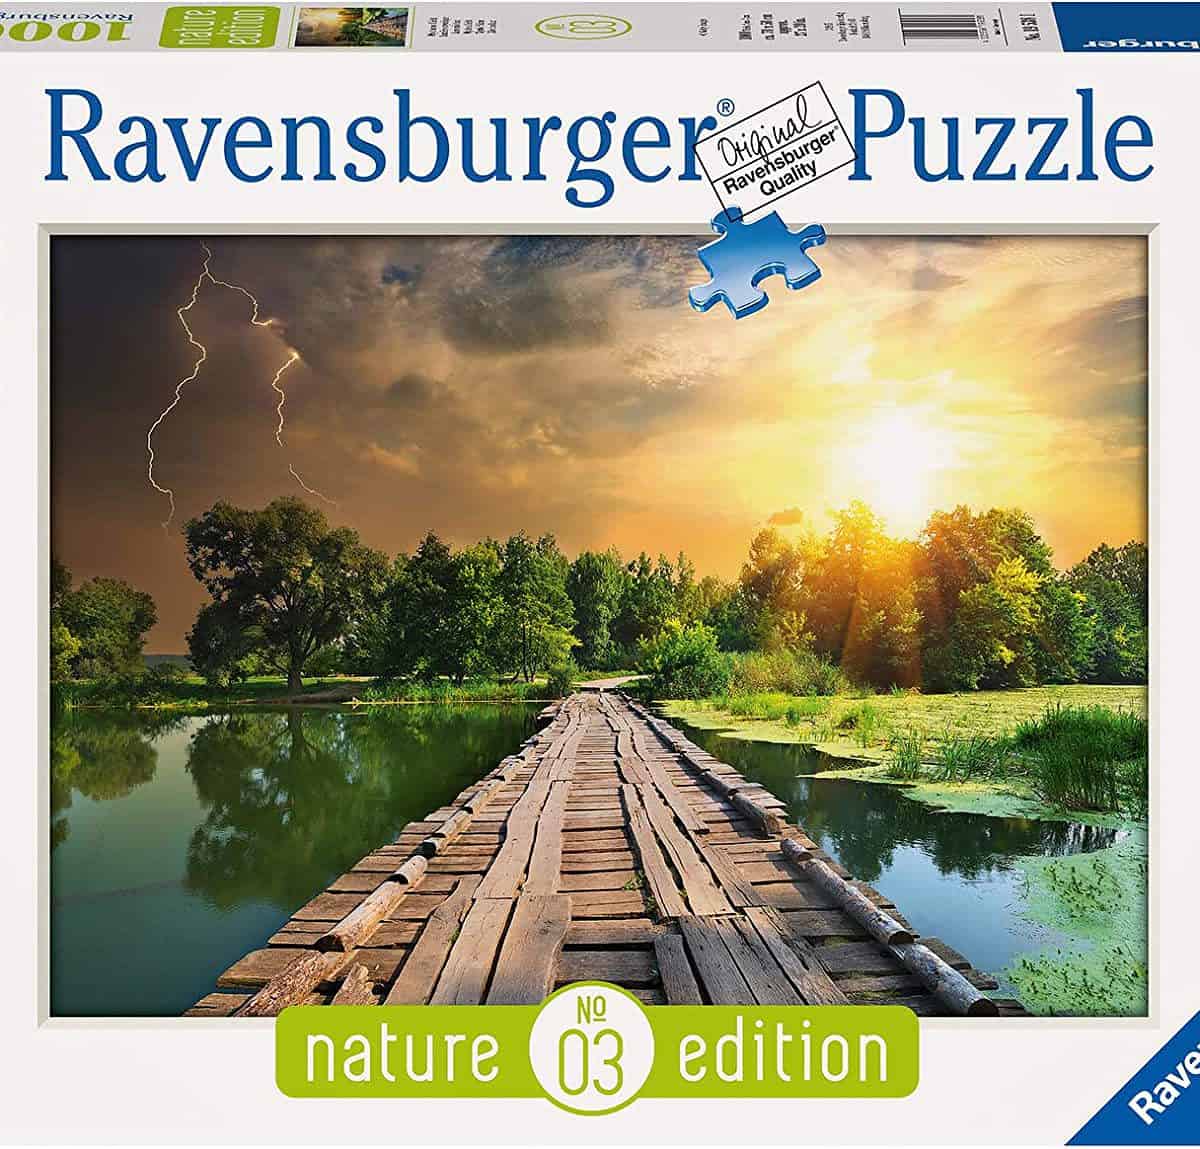 Ravensburger Puzzle Mystisches Licht